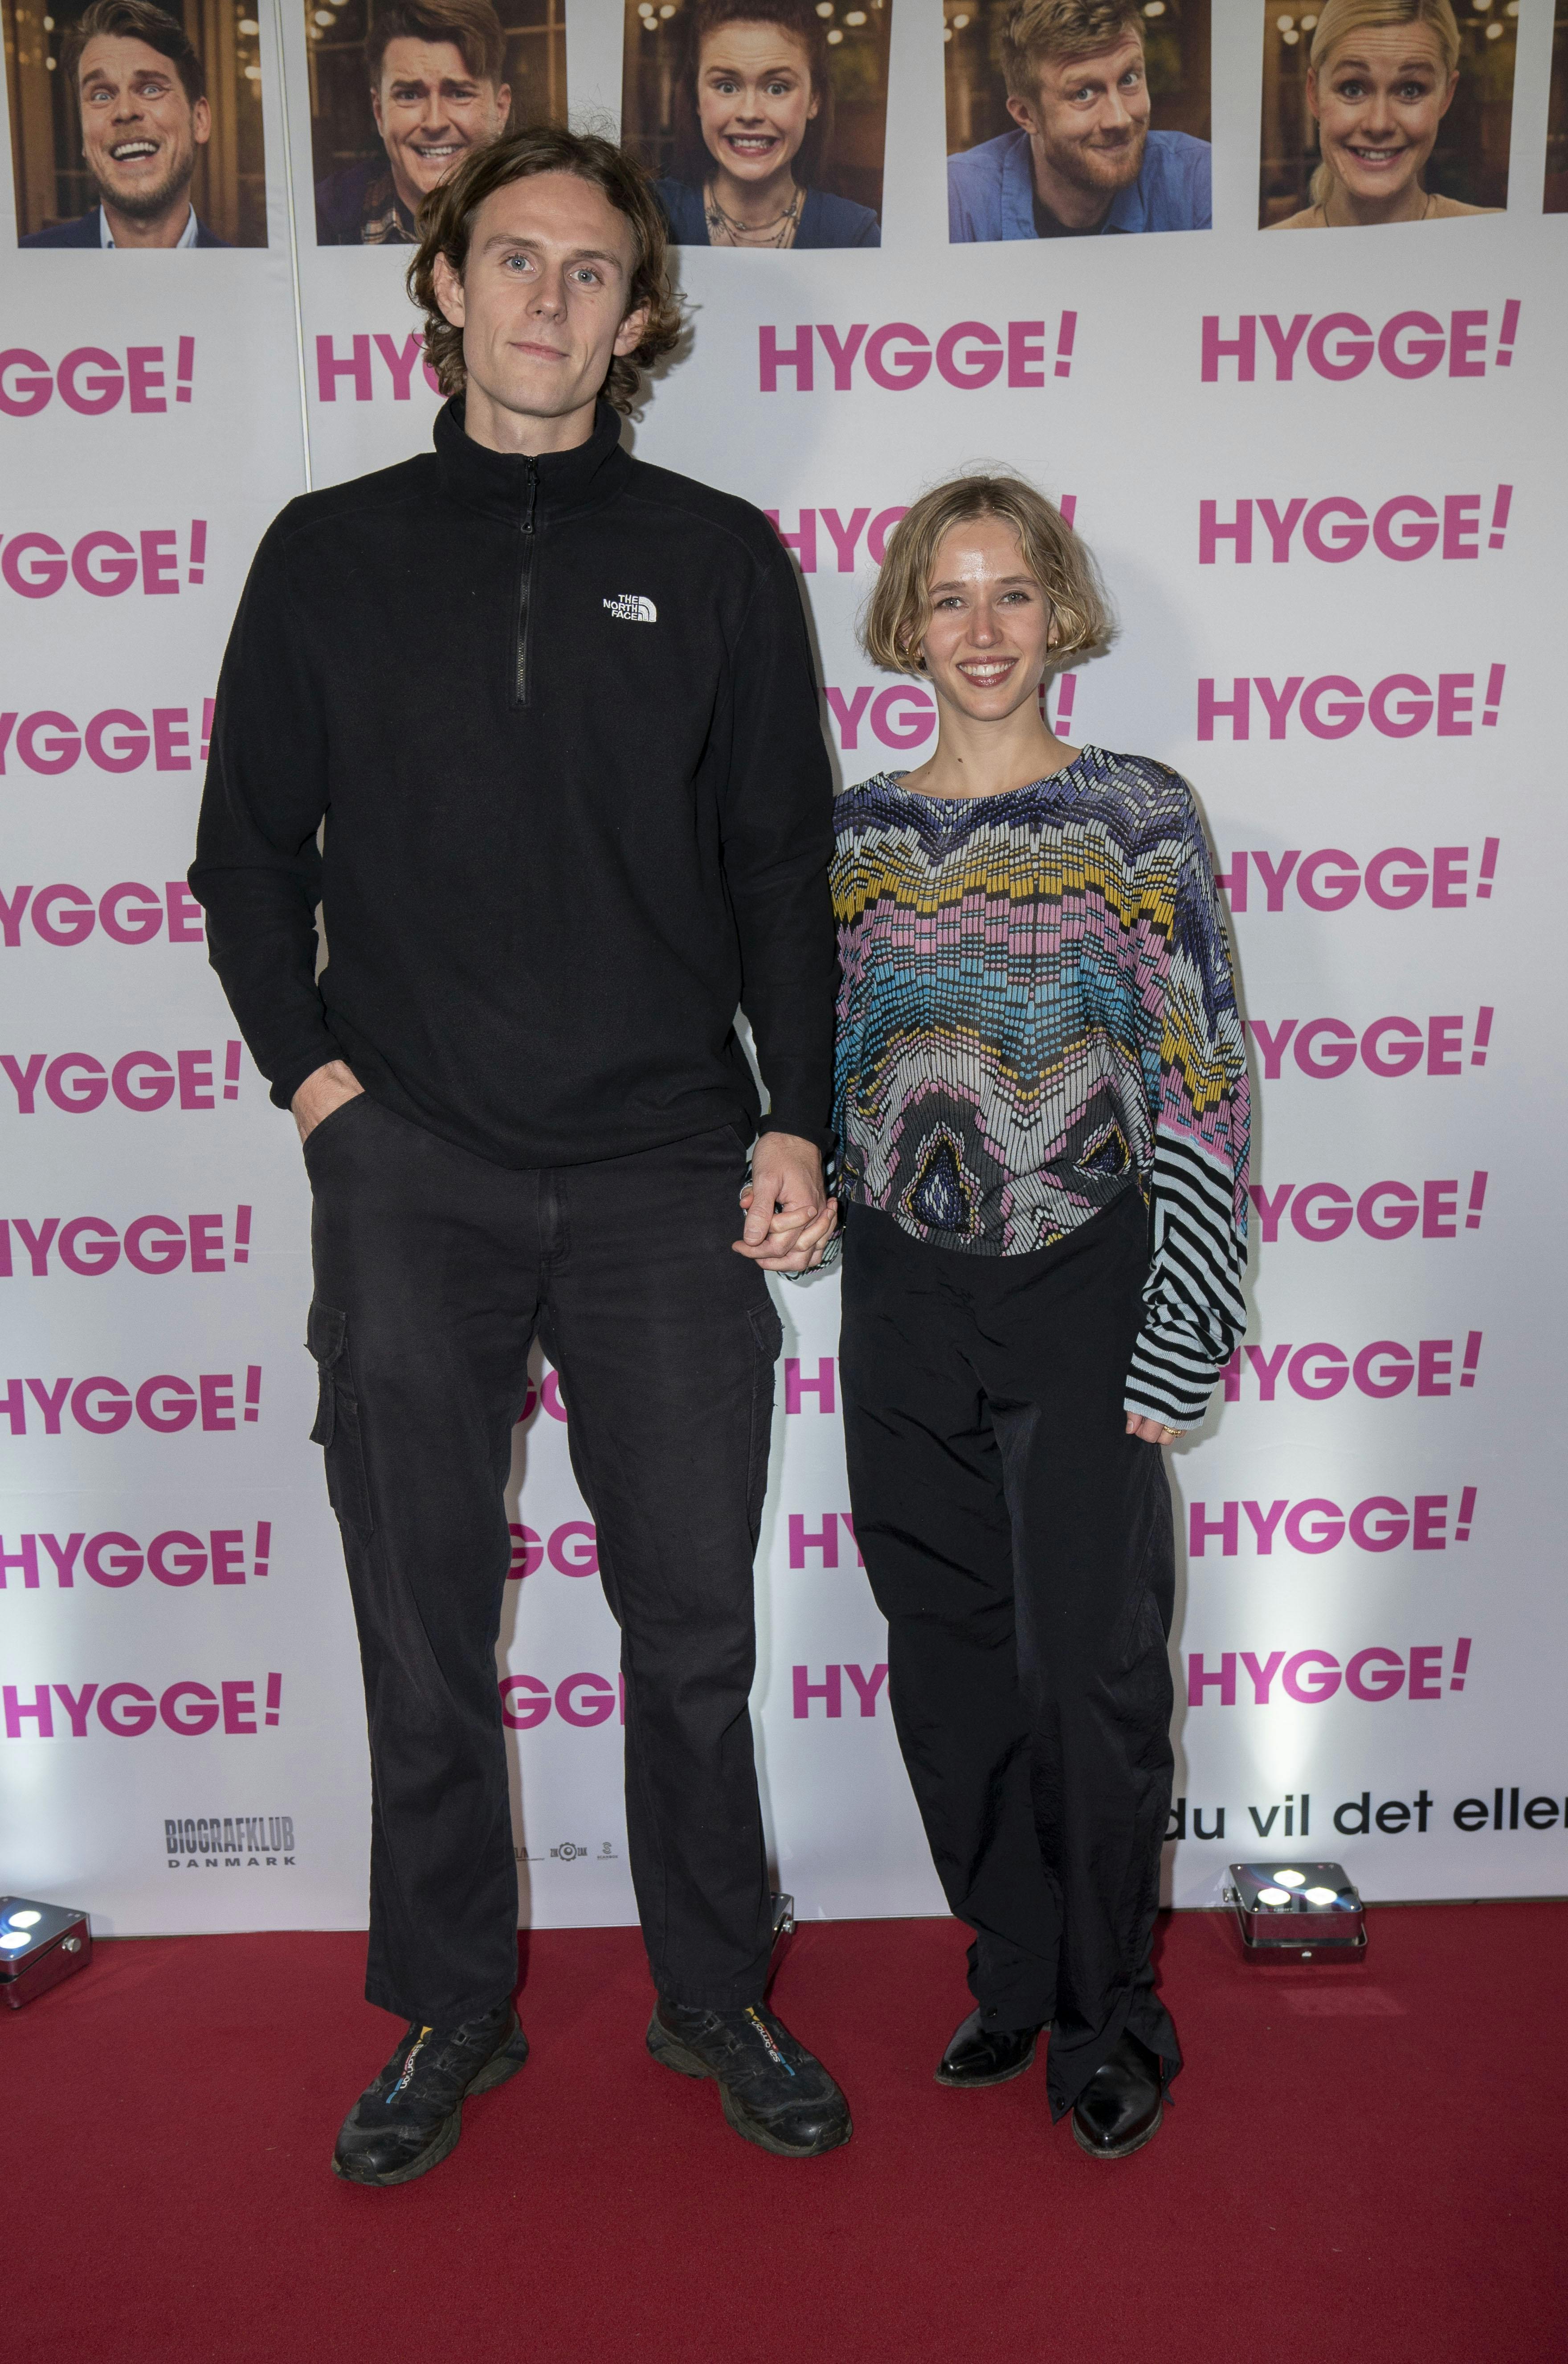 William Torp og Marie Reuther til premiere på filmen "Hygge", hvori Sofie Torp spiller en stor rolle.